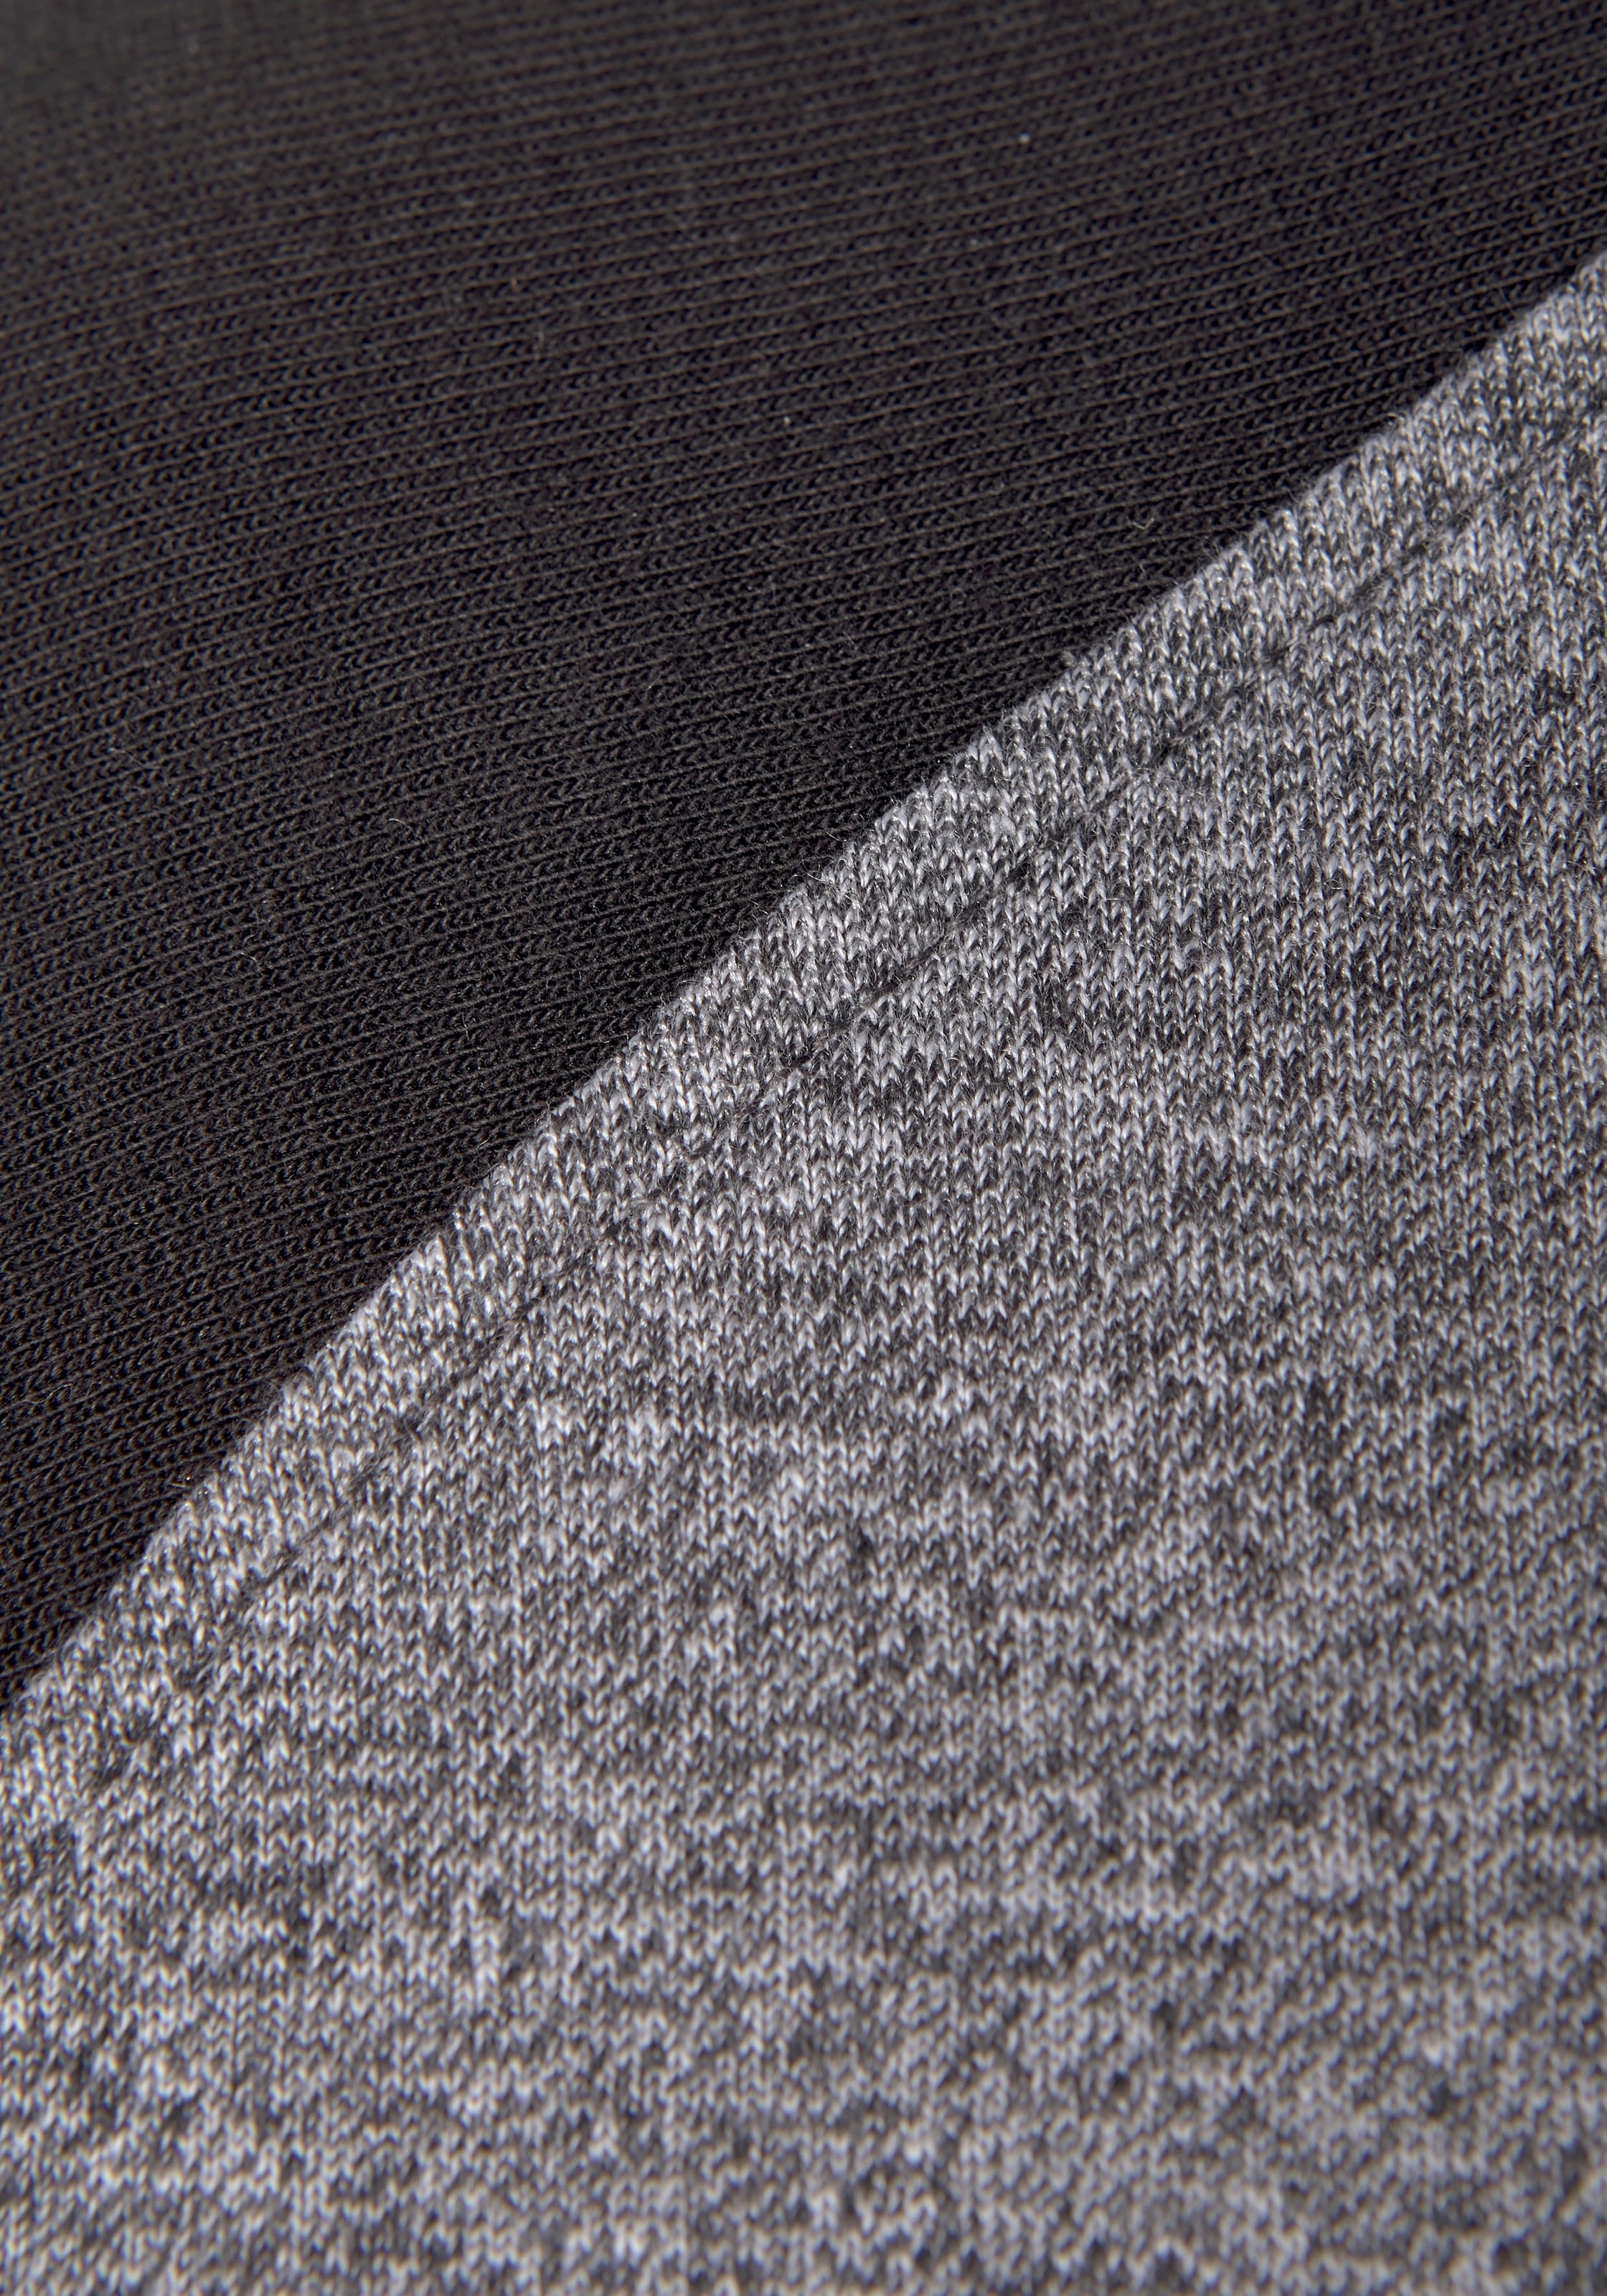 Bench. Kapuzensweatshirt, mit farblich abgesetzten Ärmeln und Logodruck für  bestellen | BAUR